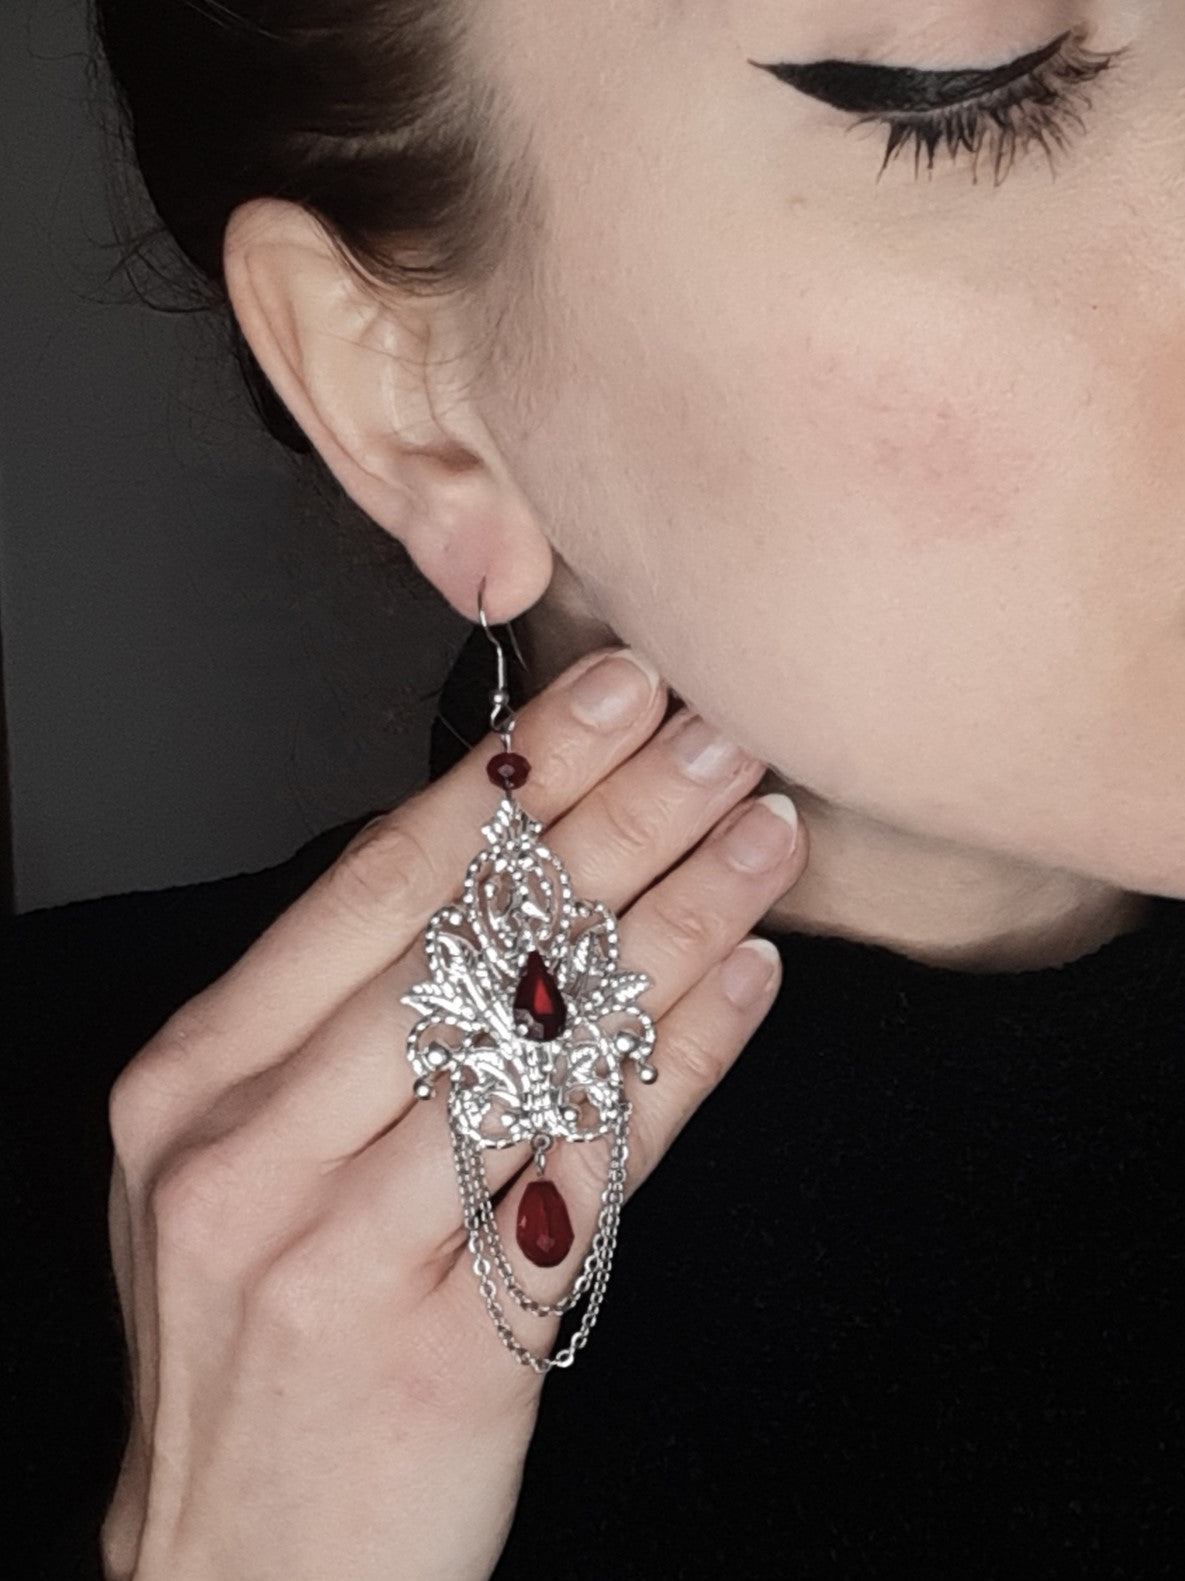 𝕺𝖕𝖚𝖑𝖊𝖓𝖈𝖊 𝟓  - Red earrings